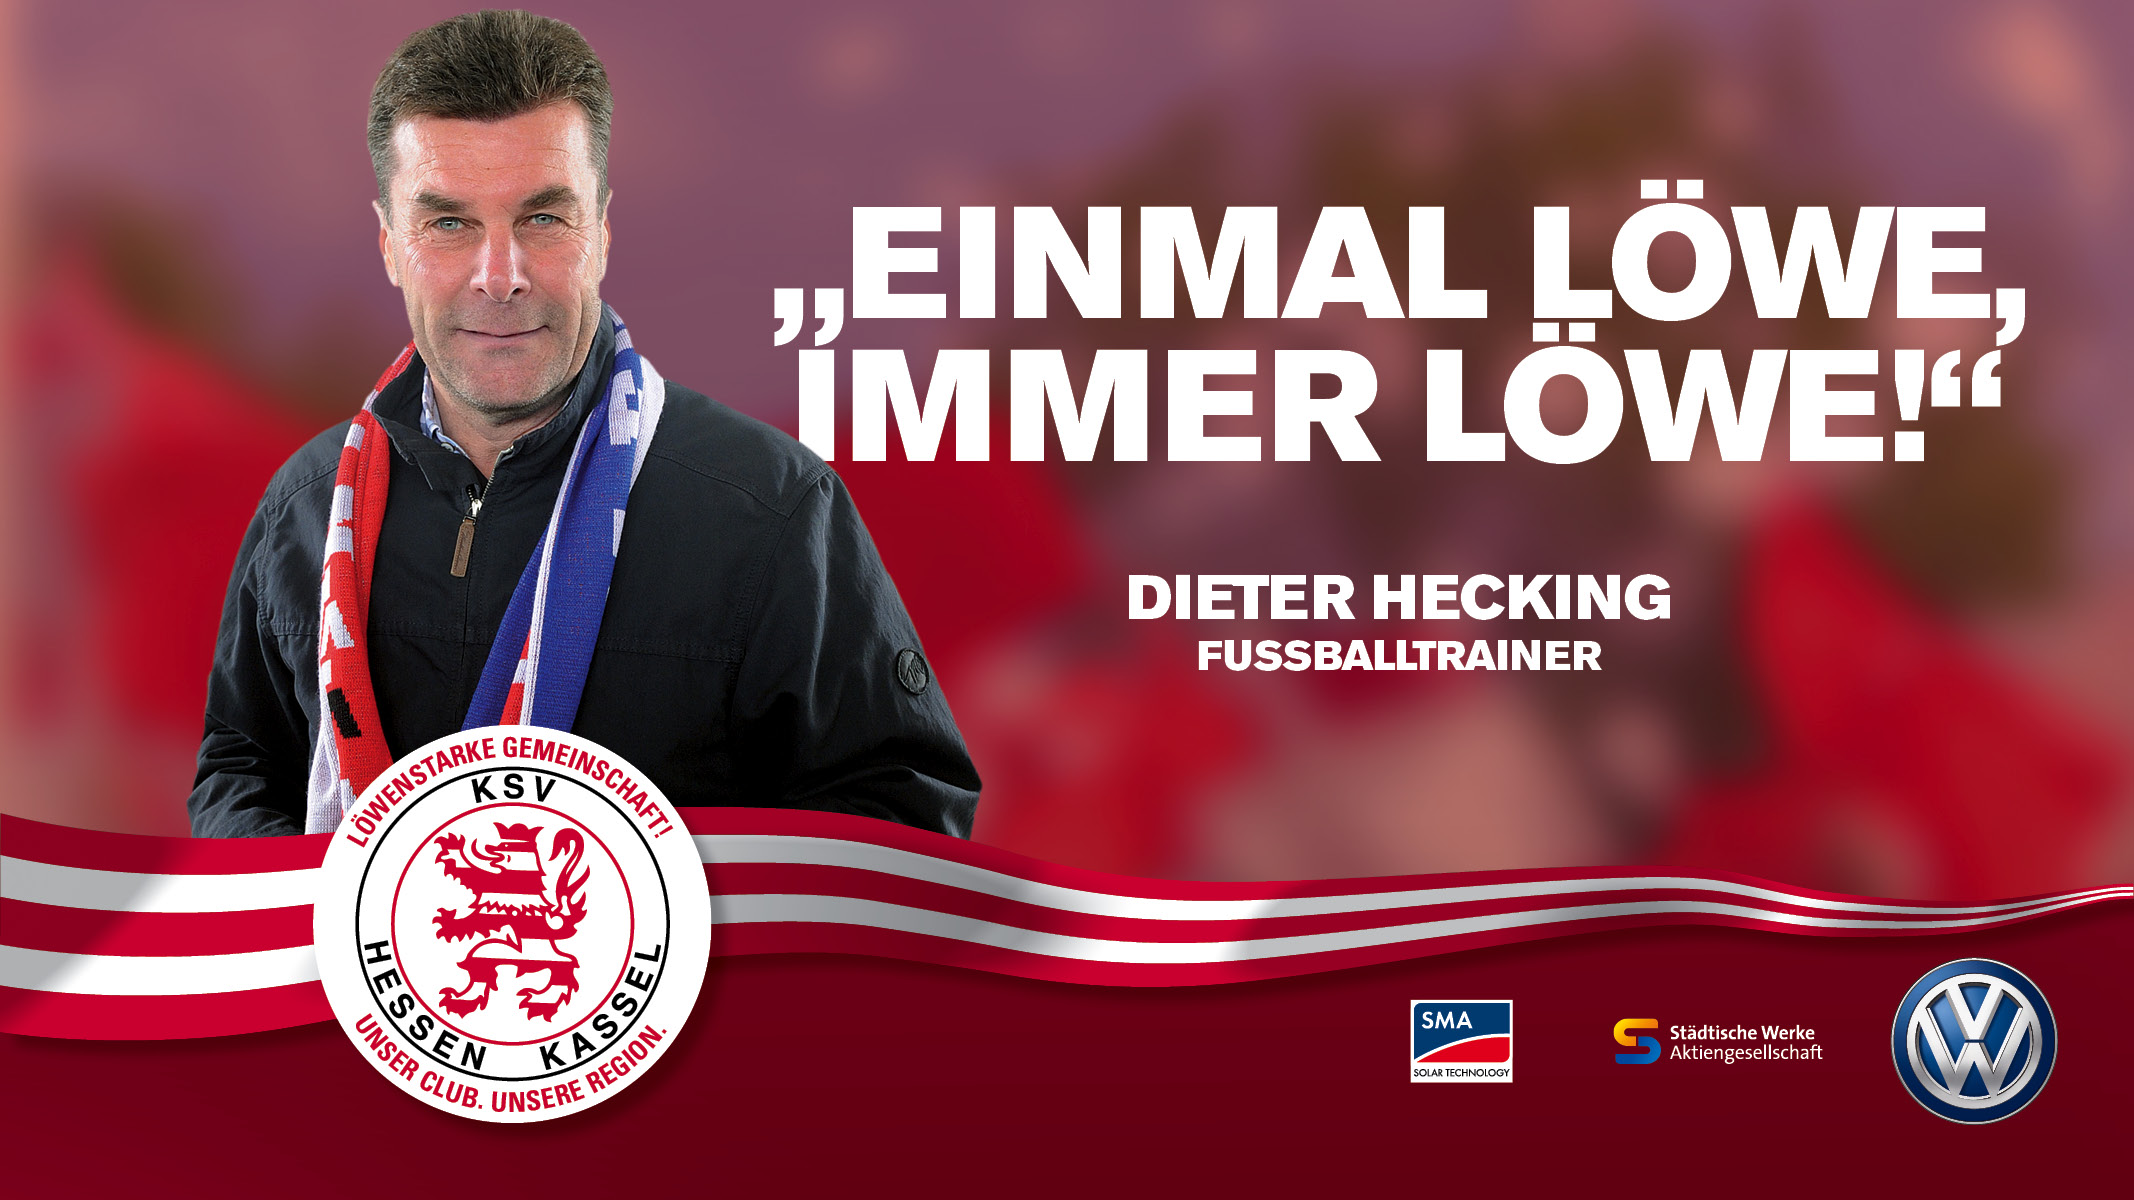 KSV Kampagne 2013 Dieter Hecking